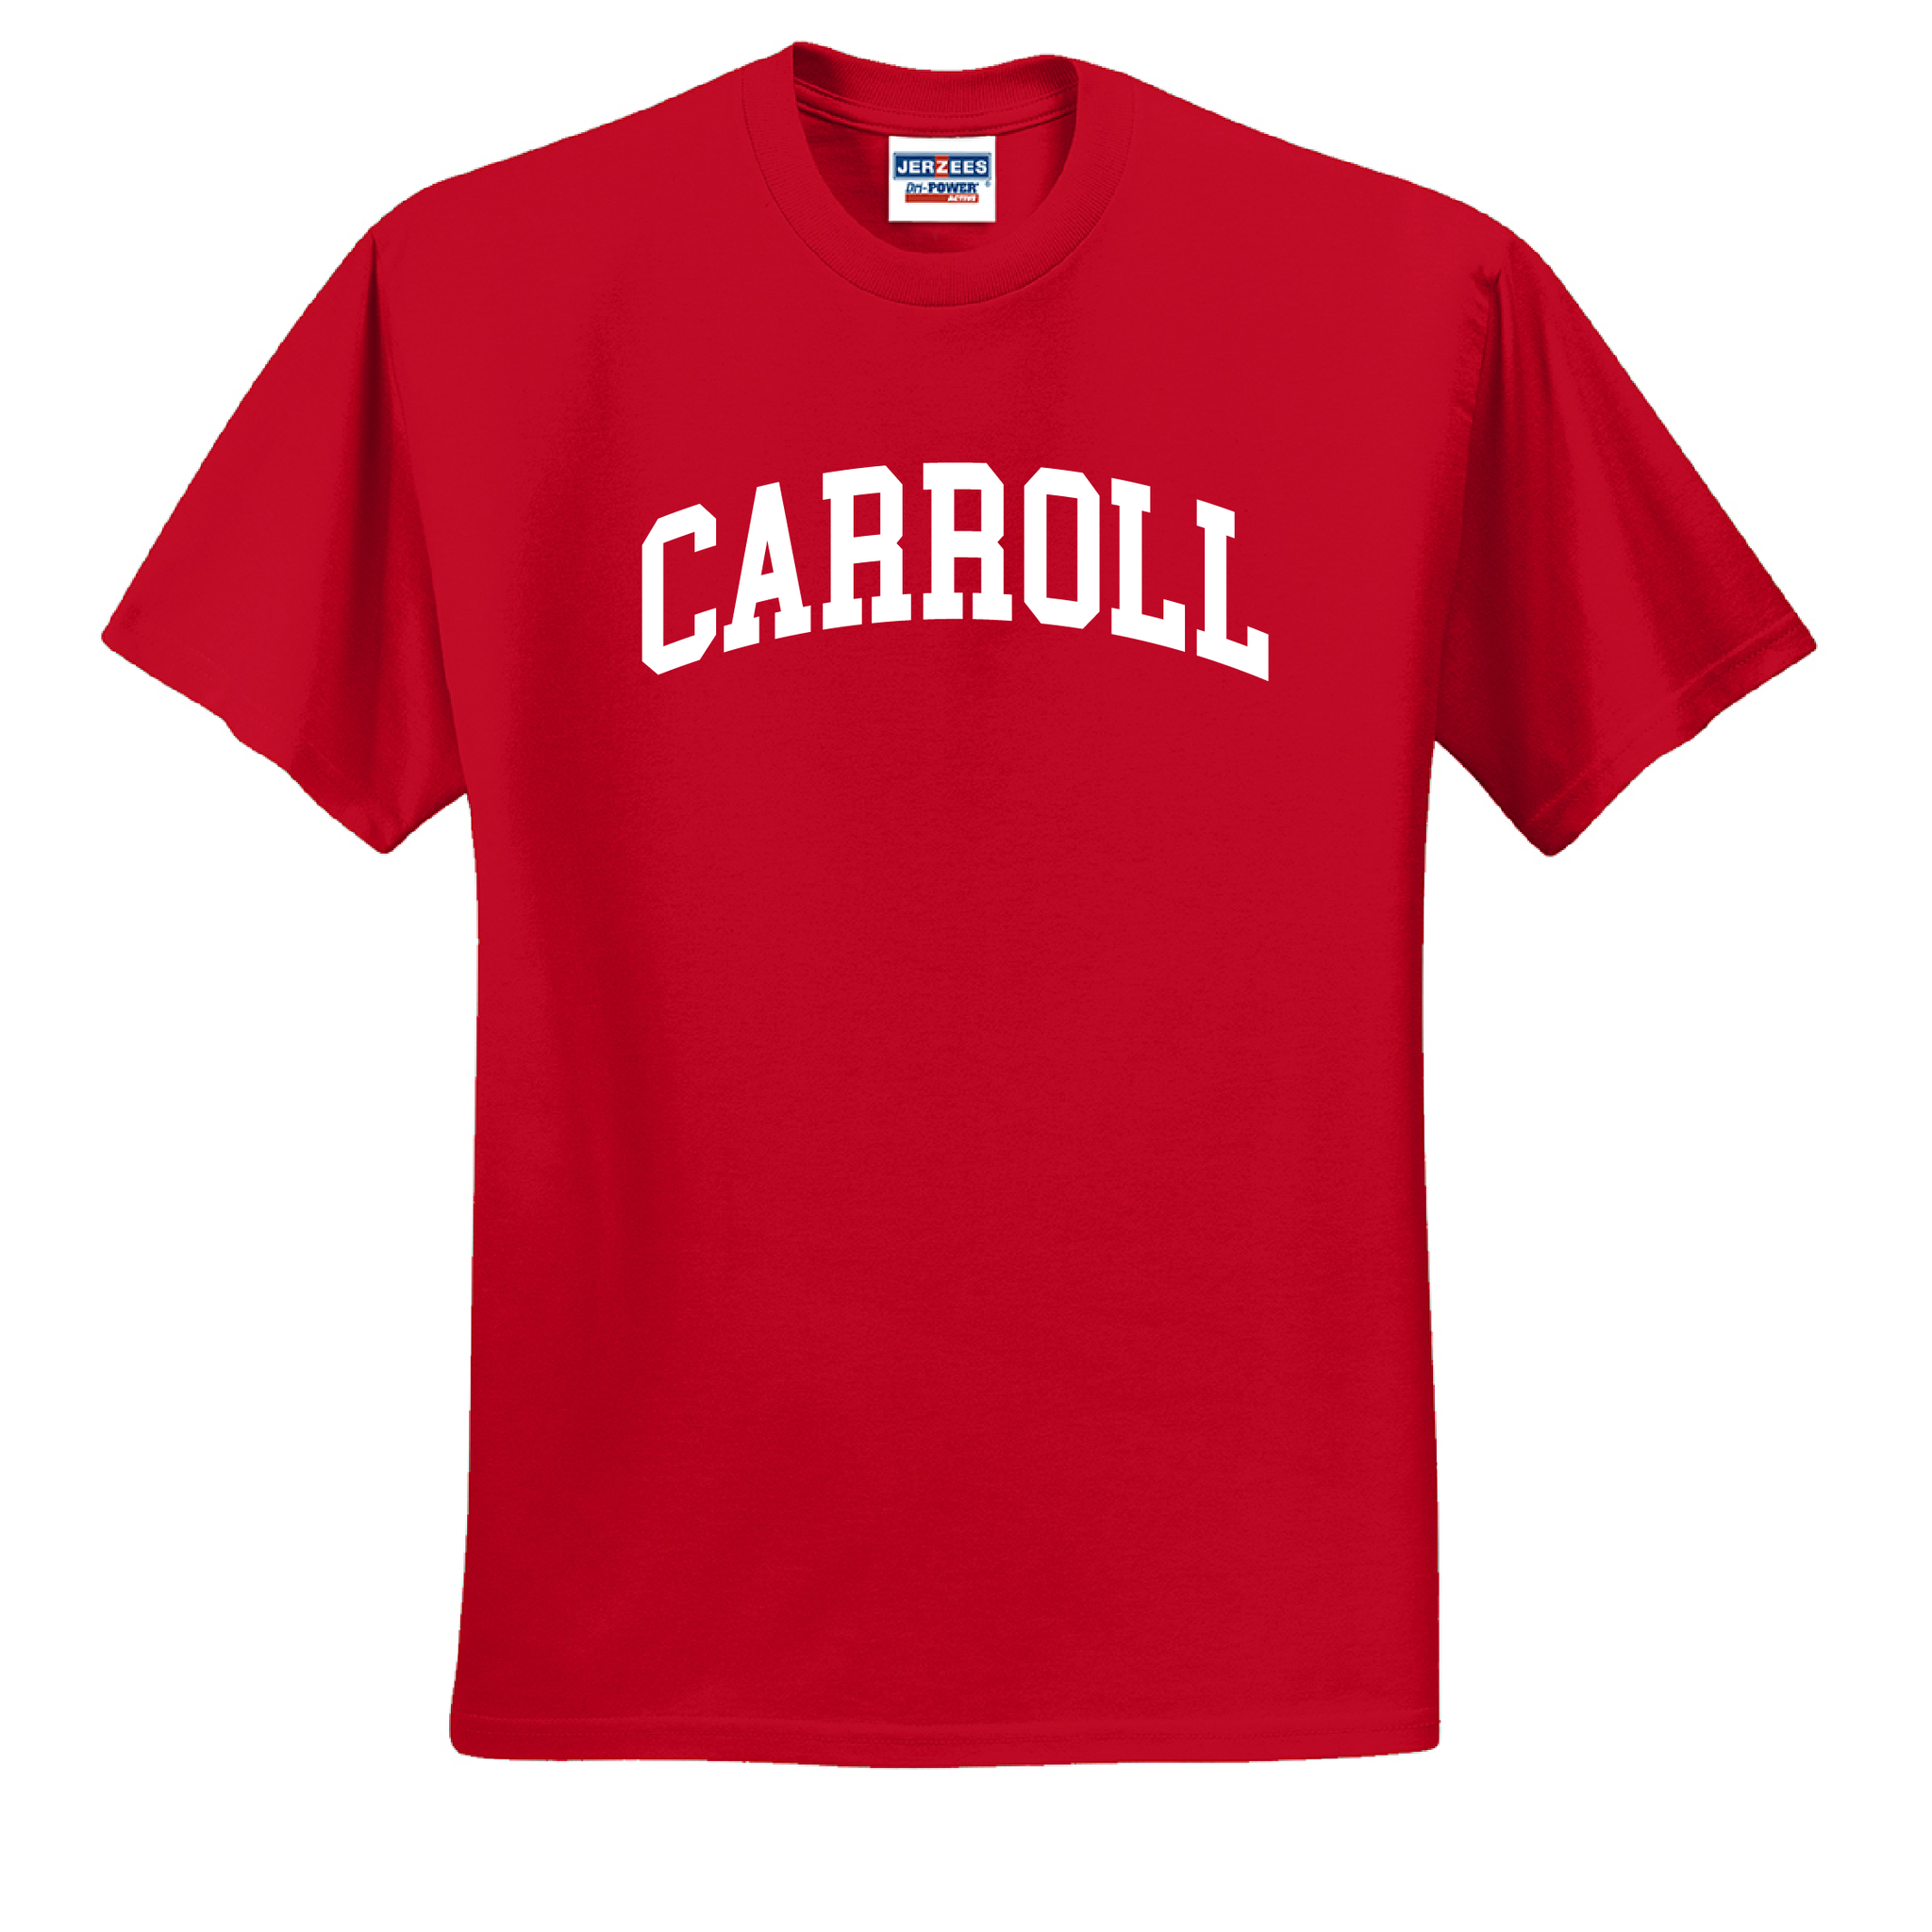 Carroll T-Shirt